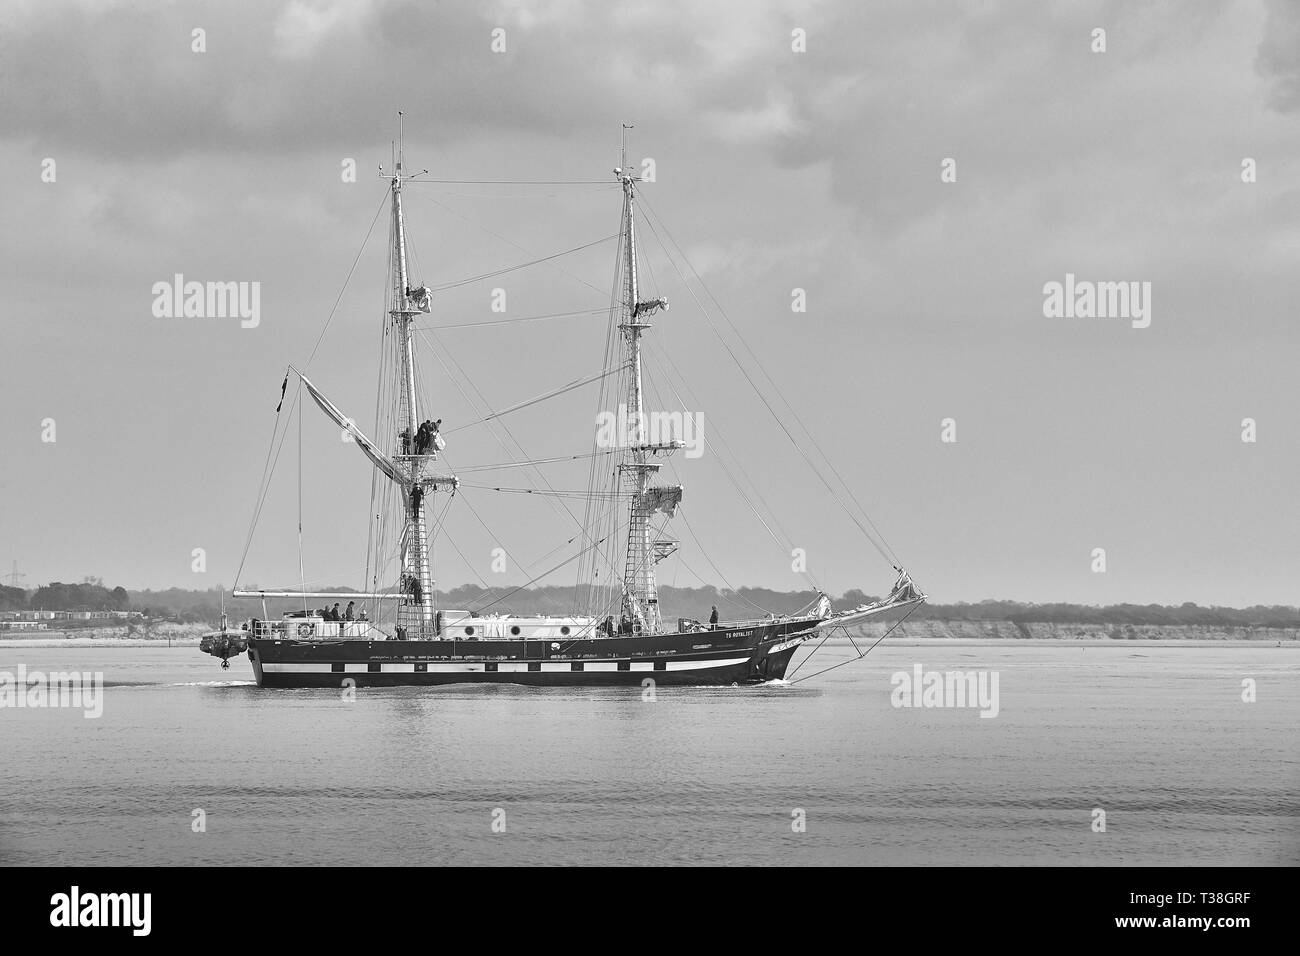 Foto in bianco e nero di marinai di salpare sulla nave di formazione, TS ROYALIST (Tall Ship), con partenza dal Porto di Southampton, il 28 marzo 2019. Foto Stock